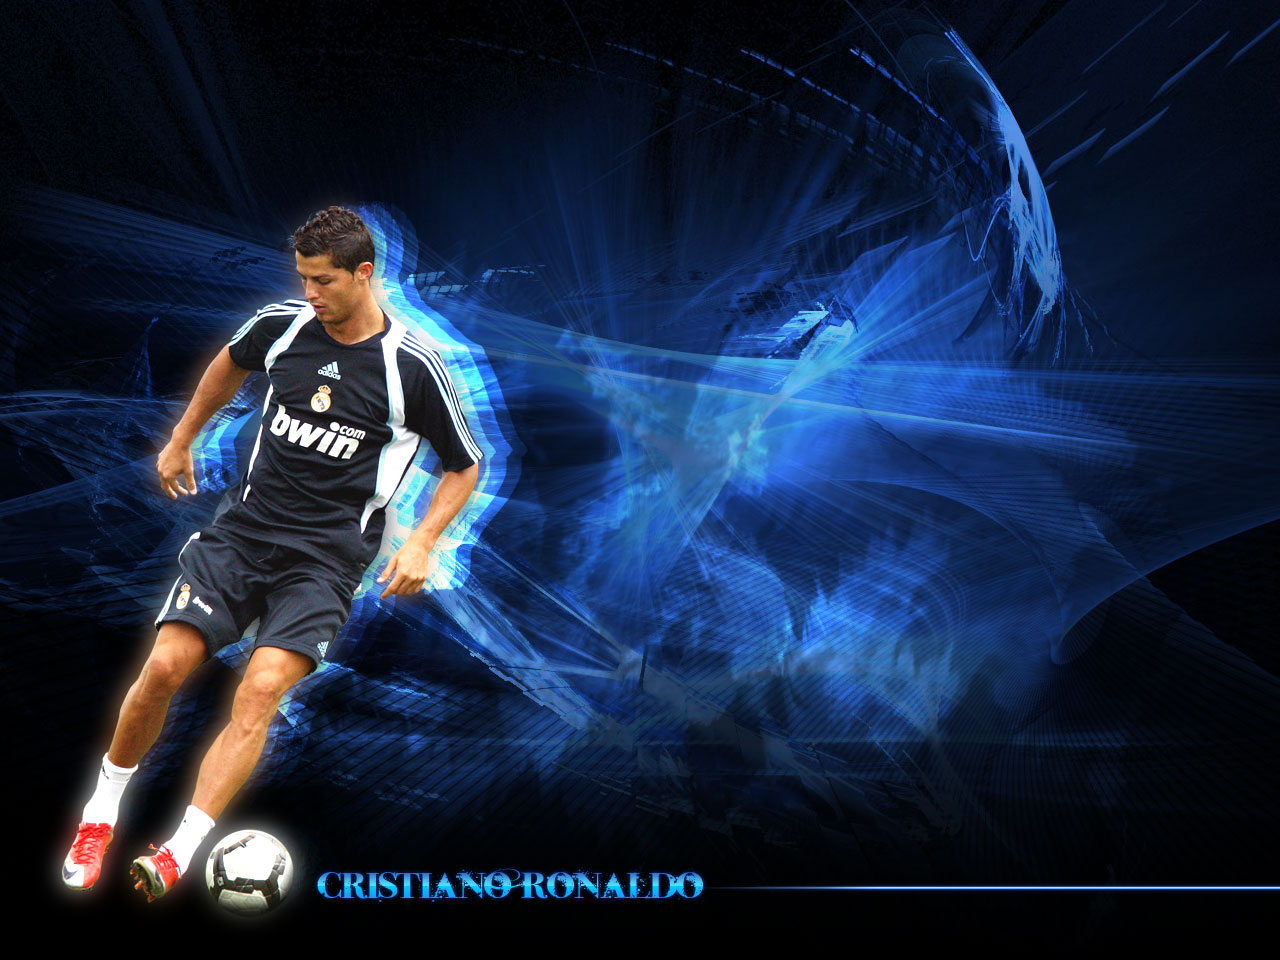 ronaldo fond d'écran télécharger,joueur de football,joueur,football,joueur de football,équipement sportif